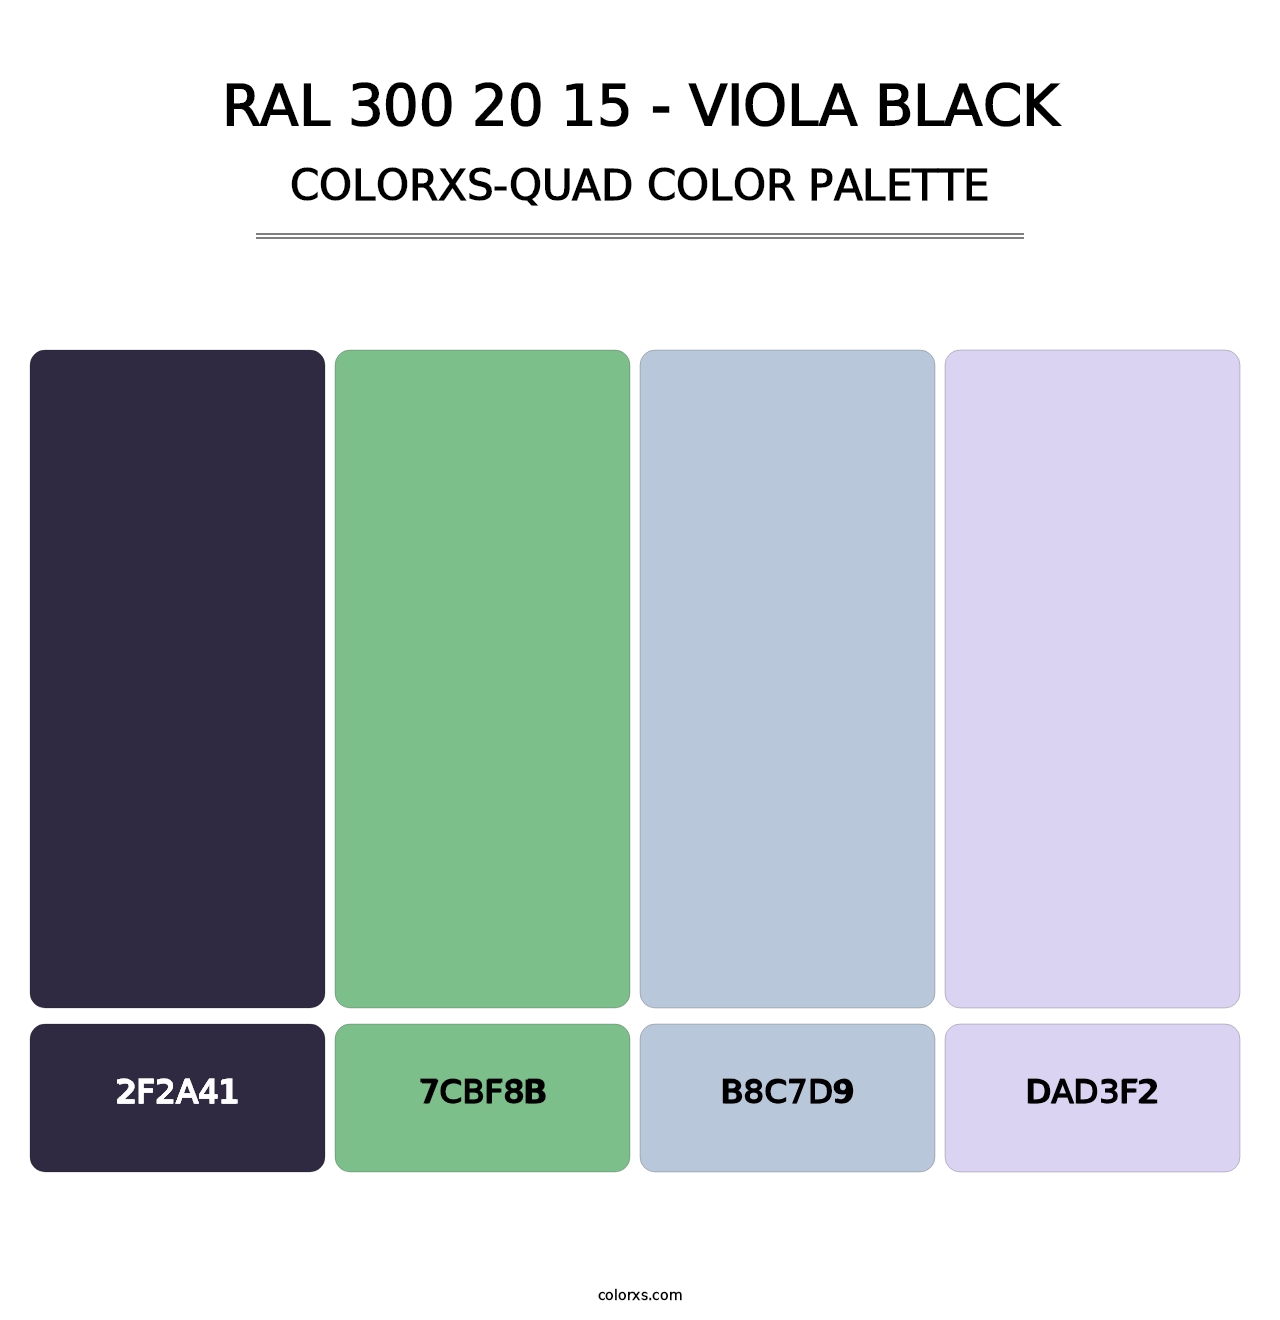 RAL 300 20 15 - Viola Black - Colorxs Quad Palette